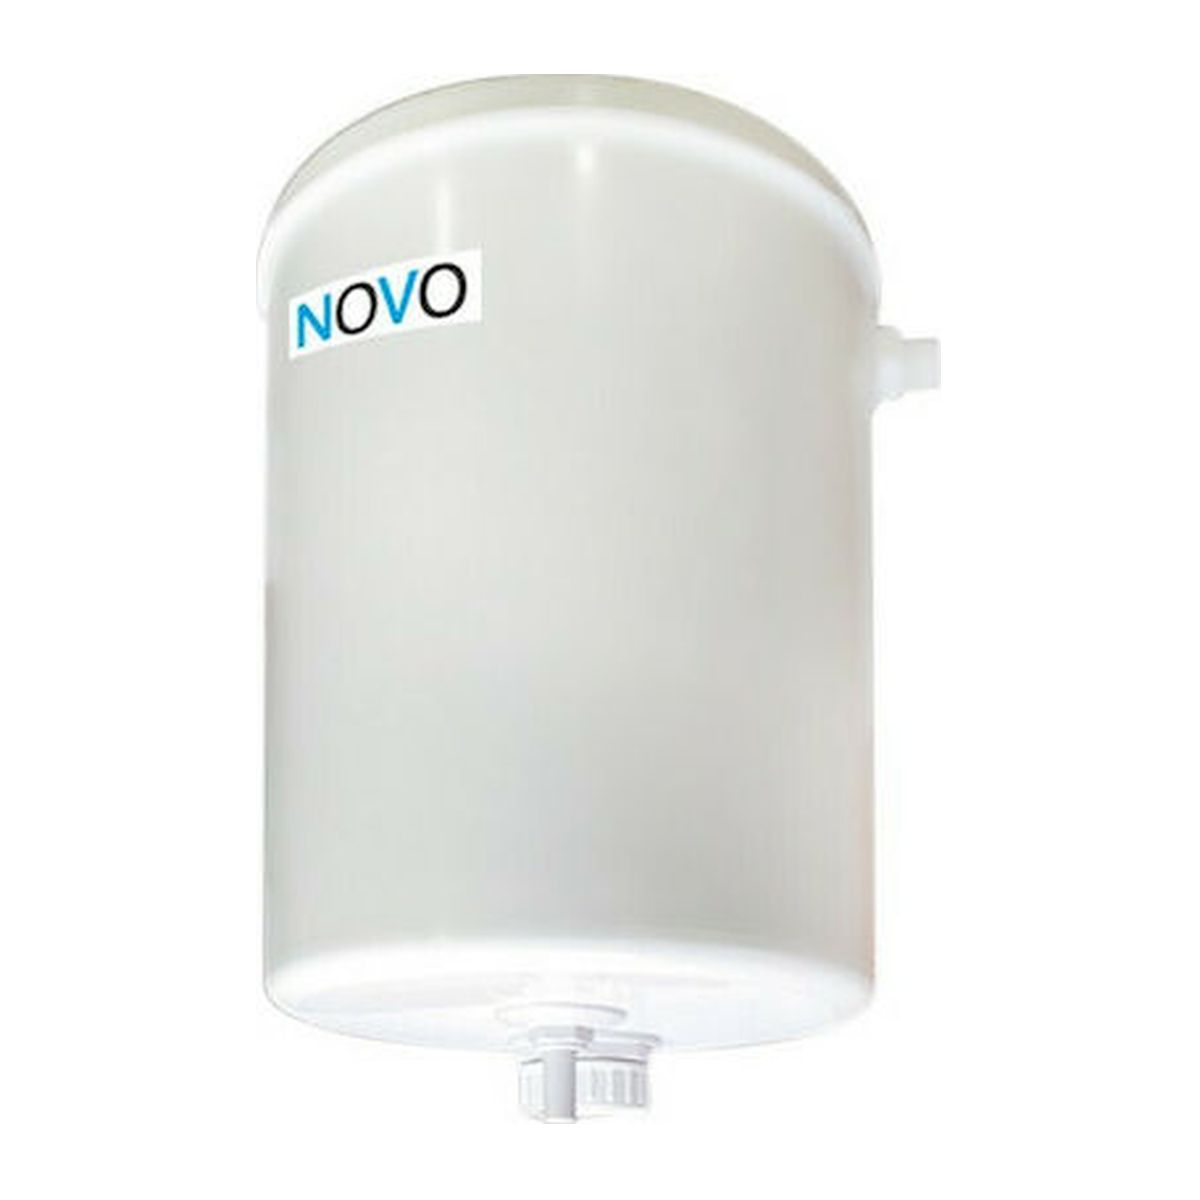 Καζανάκι Στρογγυλό με Μηχανισμό Αέρος 70-5900 Novo Sanitary Ware Viospiral